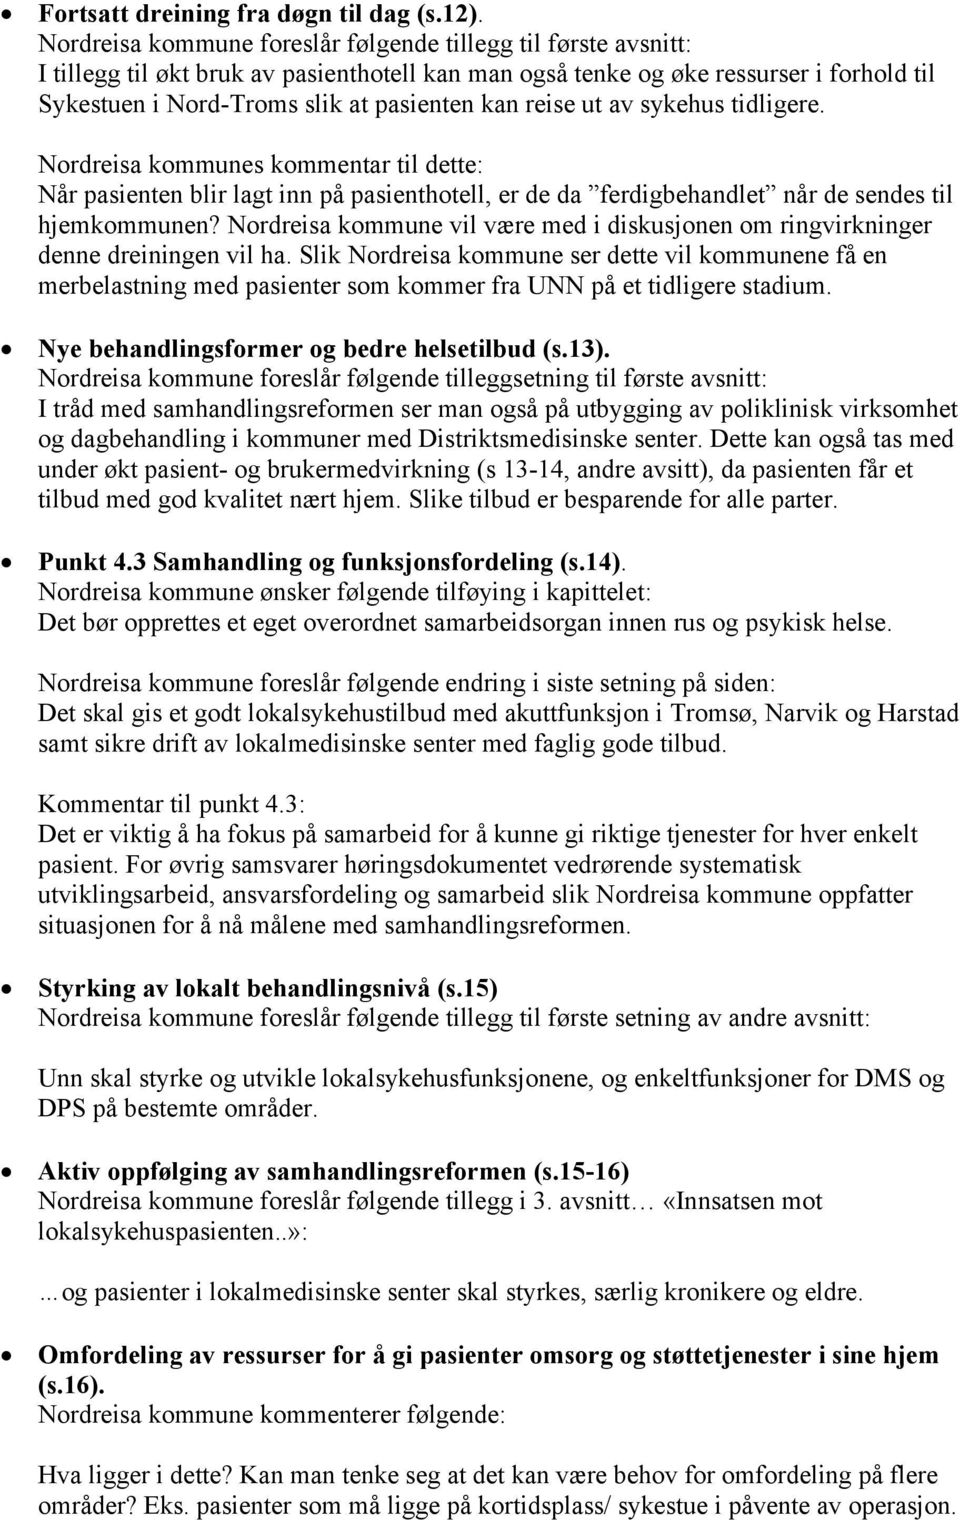 reise ut av sykehus tidligere. Nordreisa kommunes kommentar til dette: Når pasienten blir lagt inn på pasienthotell, er de da ferdigbehandlet når de sendes til hjemkommunen?